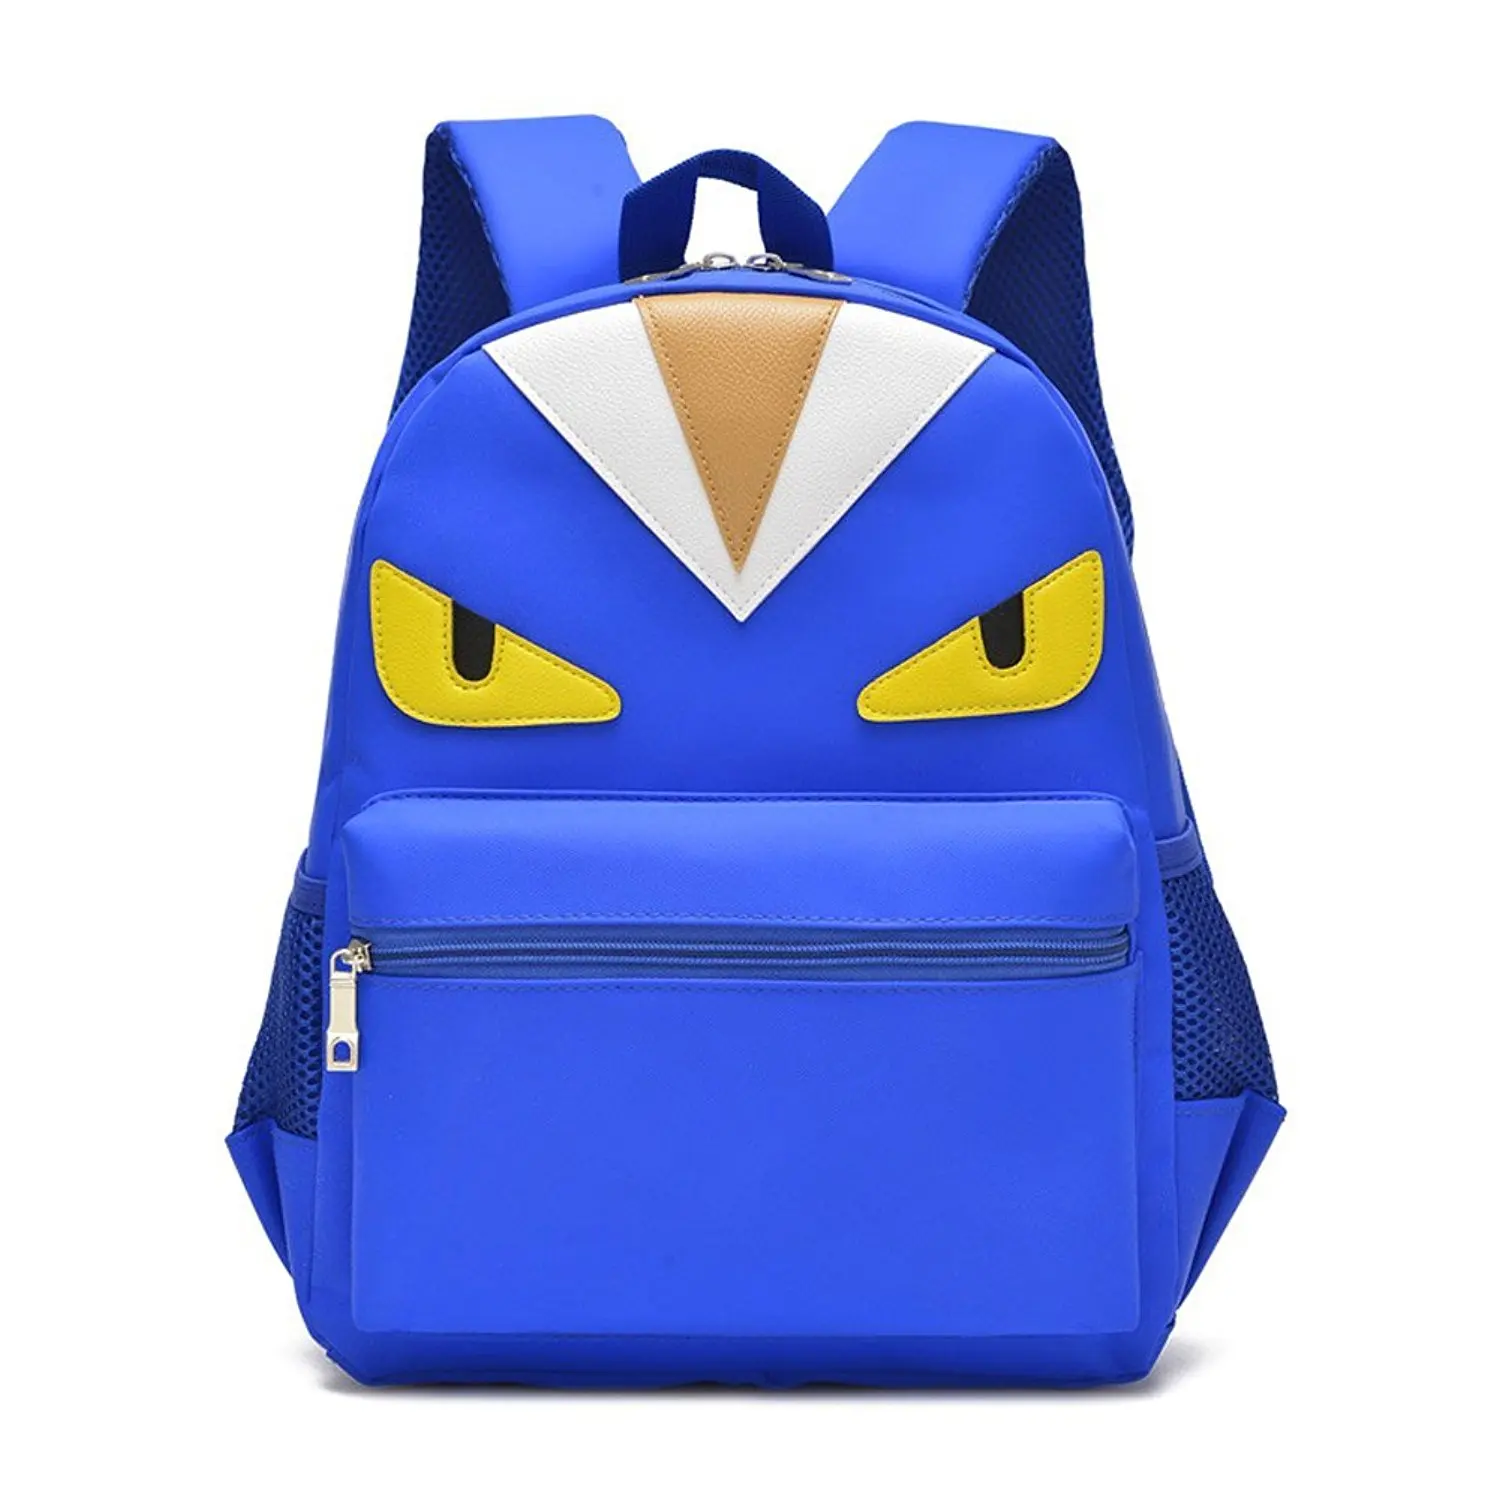 Buy Slotins Waterproof Boys Backpack For Elementary School - roblox backpack for school kids boys girls bags bookabgs